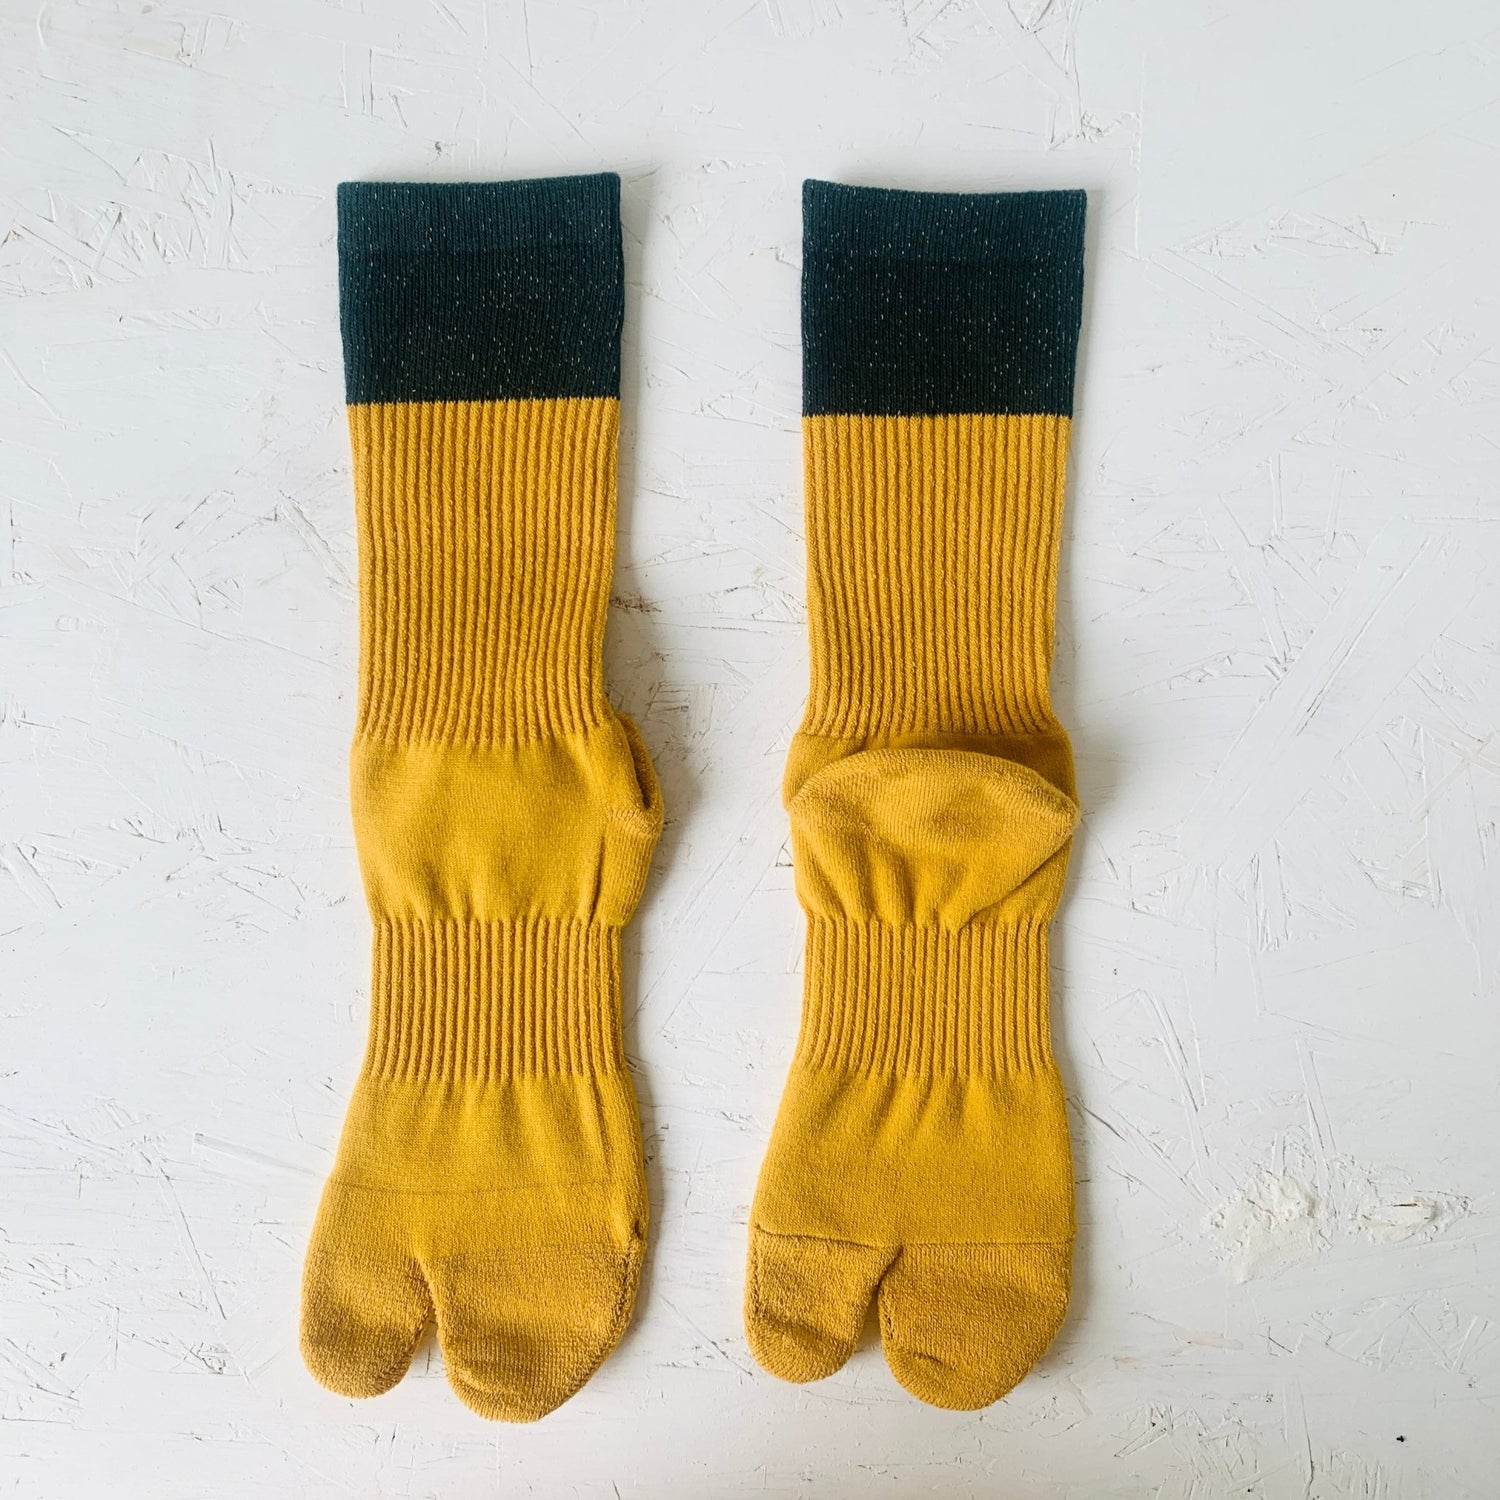 https://www.mikafleur.com/cdn/shop/products/amitabi-merino-wool-tabi-socks-taiko-coltd-357763.jpg?v=1705853021&width=1500